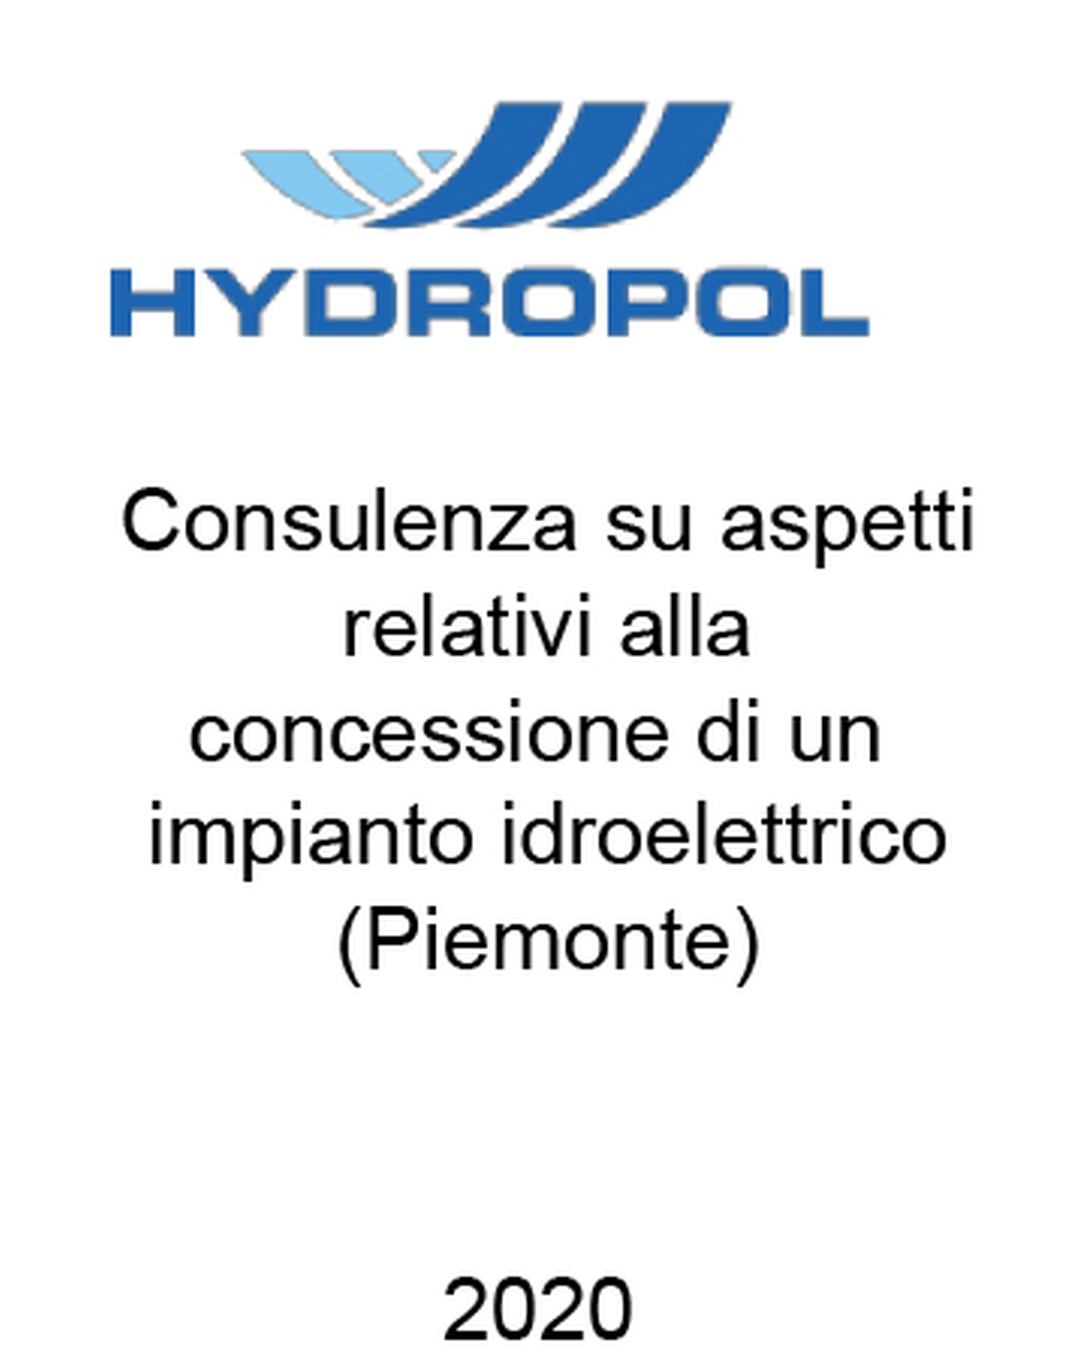 Consulente di Gruppo Hydropol (CZ) nel recupero della concessione idroelettrica della centrale idroelettrica di Scandosio (Piemonte). Incarico completato nel 2020.